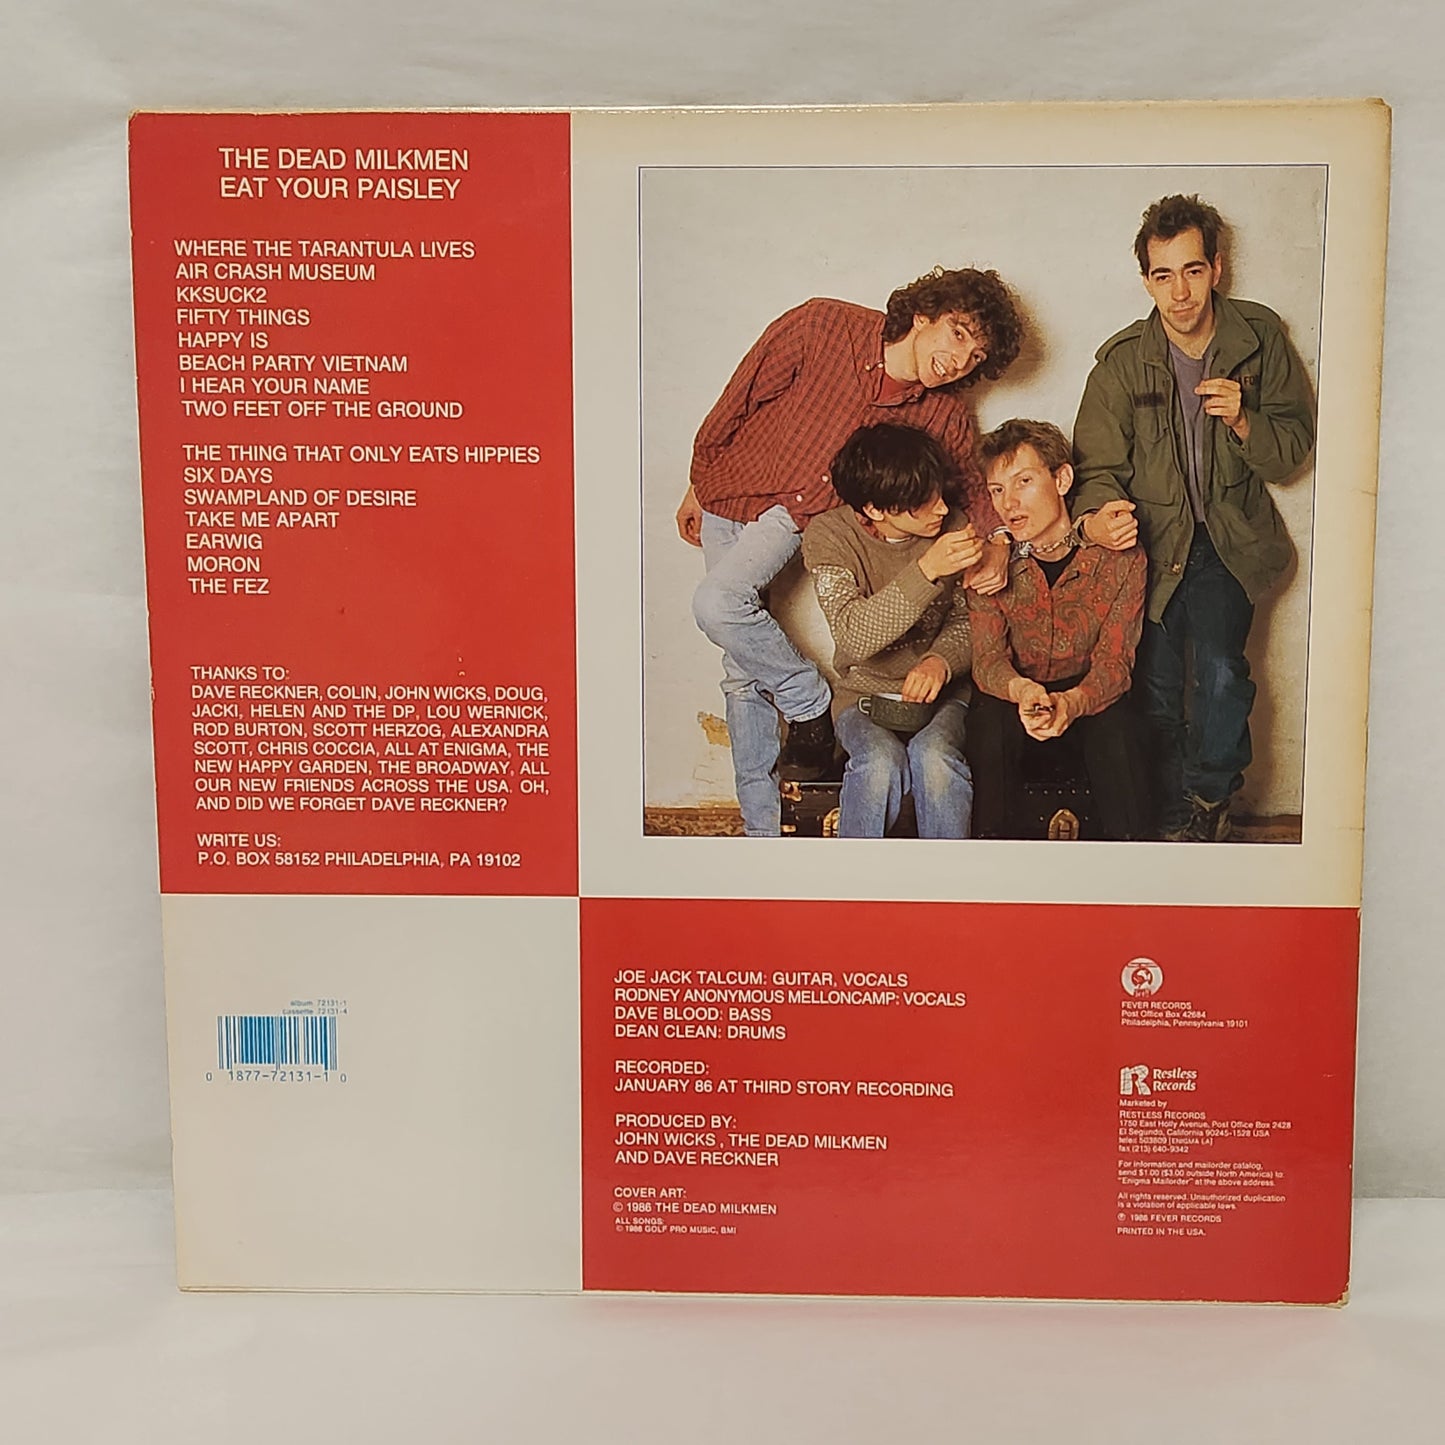 The Dead Milkmen "Eat Your Paisley" 1986 Alt Rock Punk Record Album